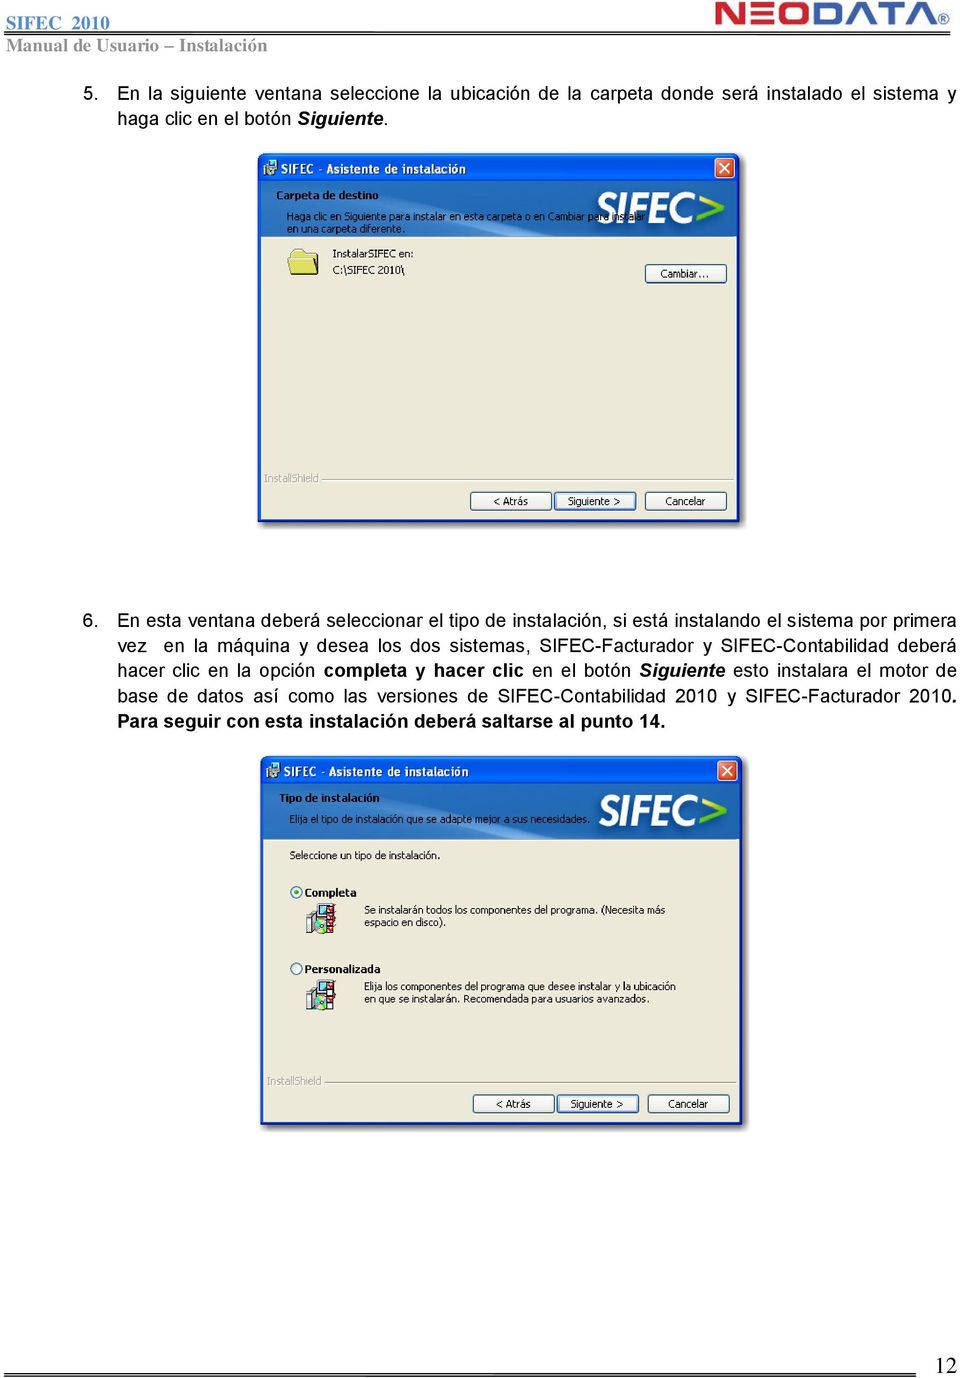 sistemas, SIFEC-Facturador y SIFEC-Contabilidad deberá hacer clic en la opción completa y hacer clic en el botón Siguiente esto instalara el